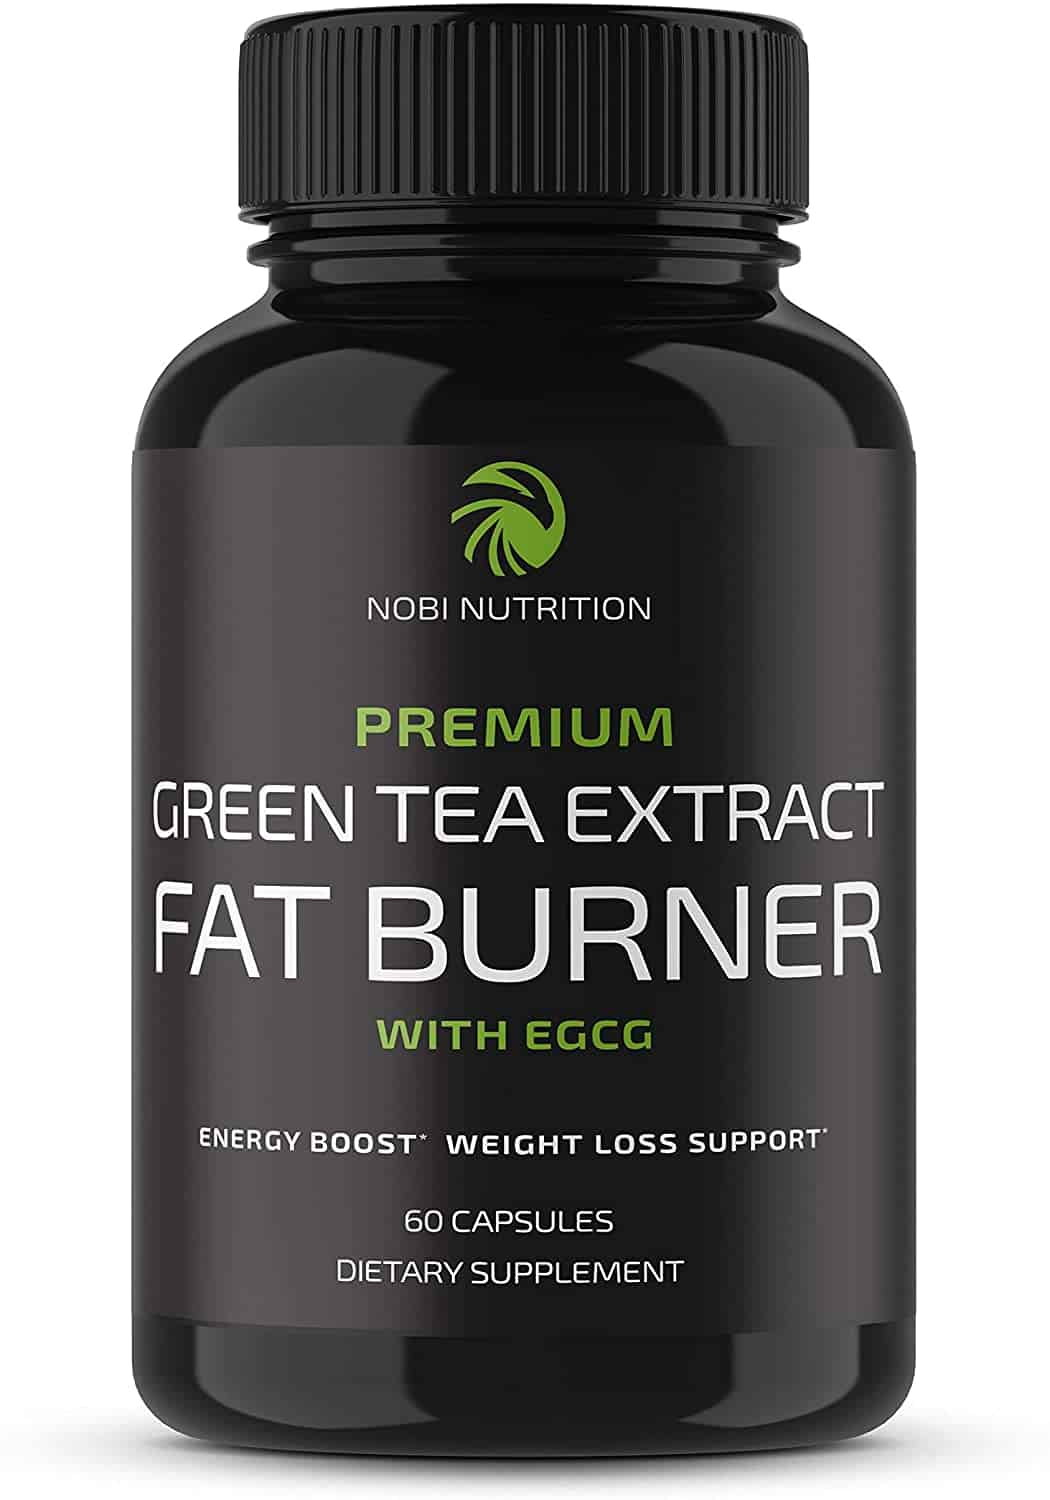 Nobi Nutrition Green Tea Fat Burner